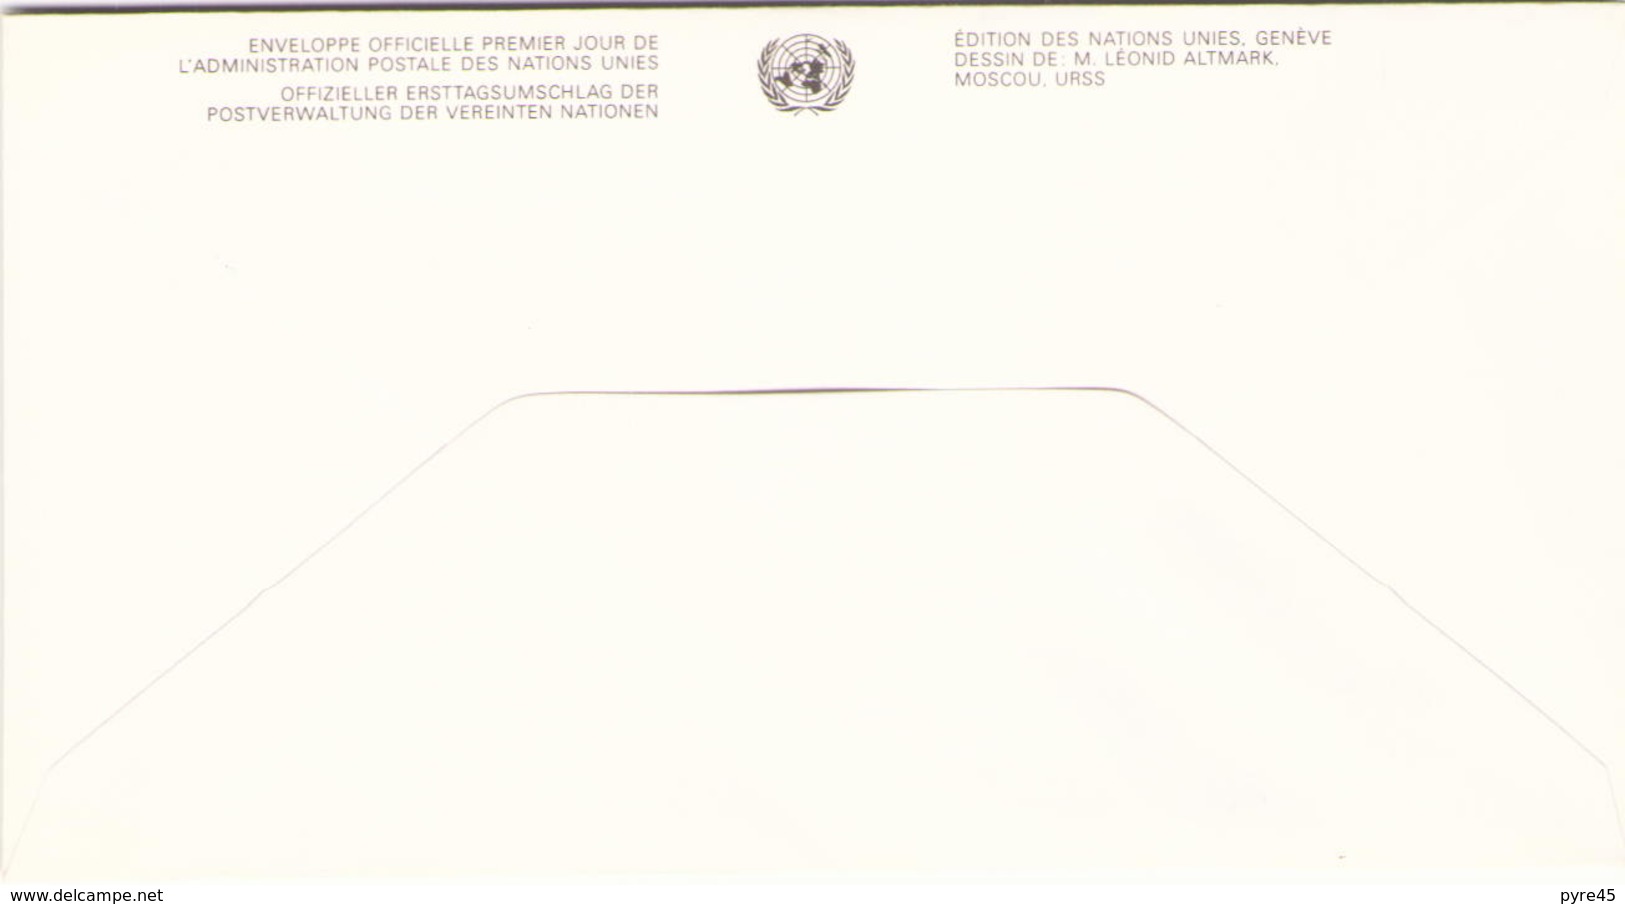 NATIONS UNIES FDC DU 20 NOVEMBRE 1991 VIENNE SERIE DES DROITS DE L HOMME - Briefe U. Dokumente